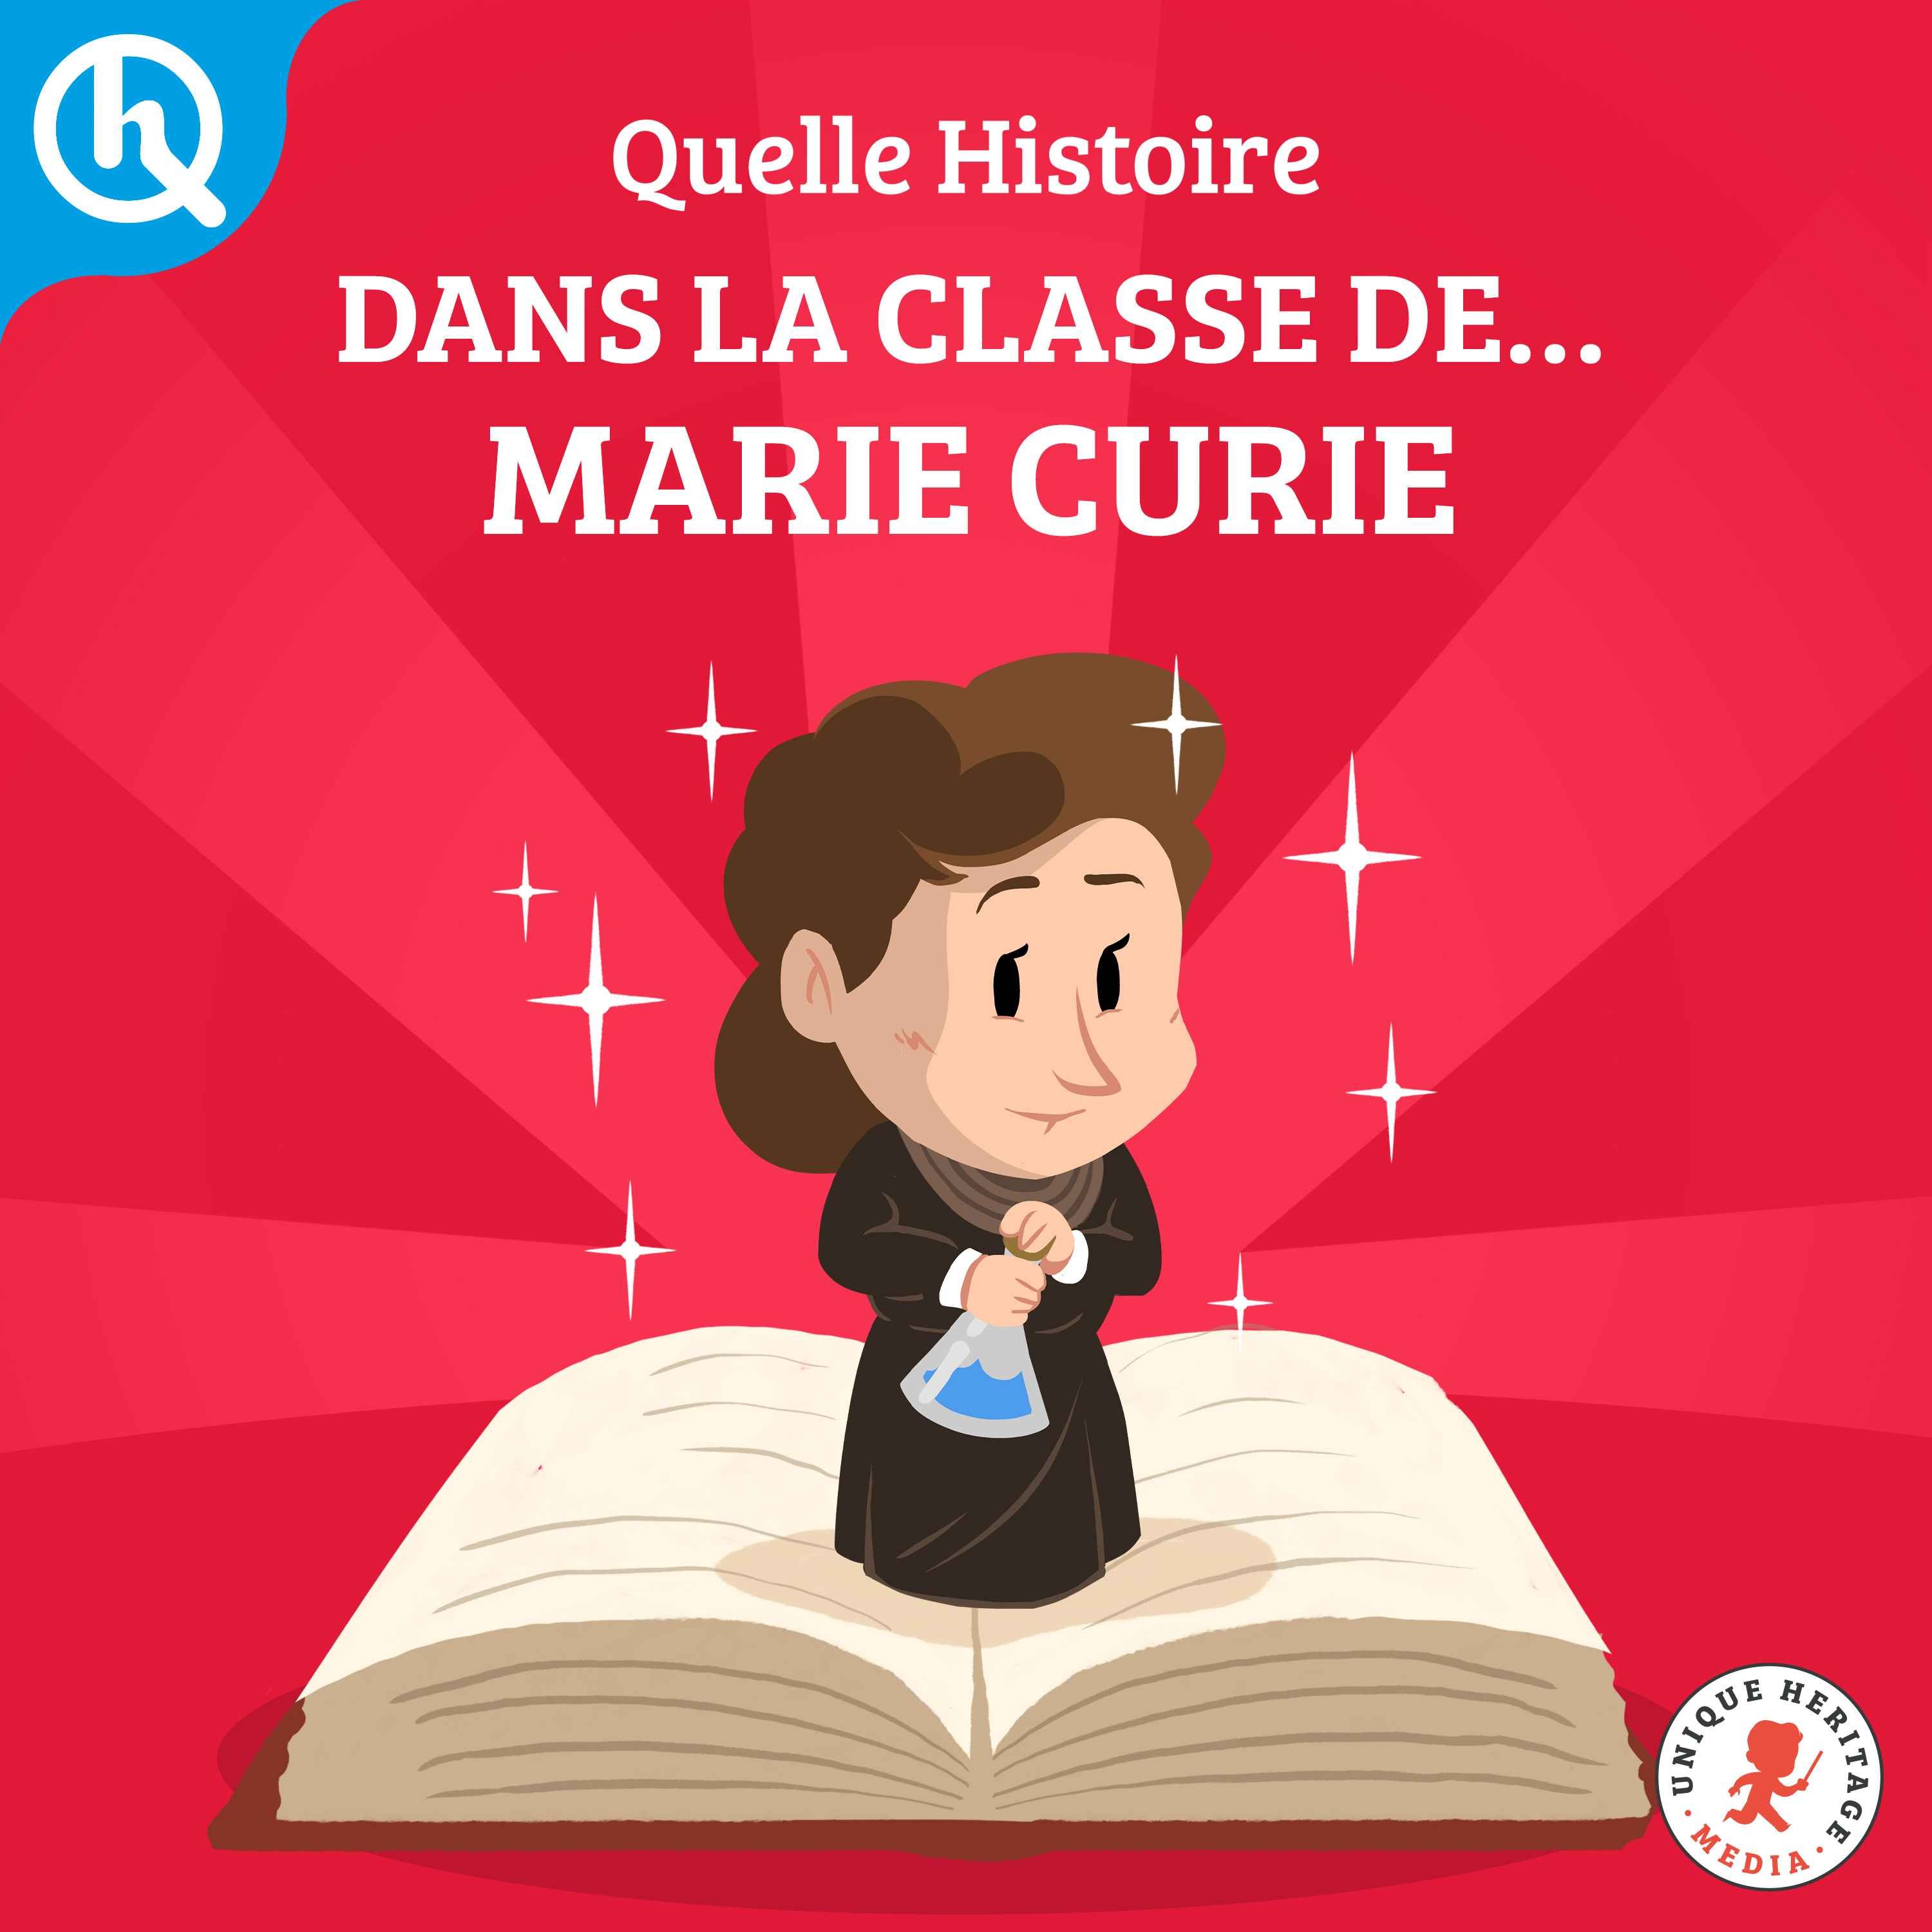 Dans la classe de, Marie Curie